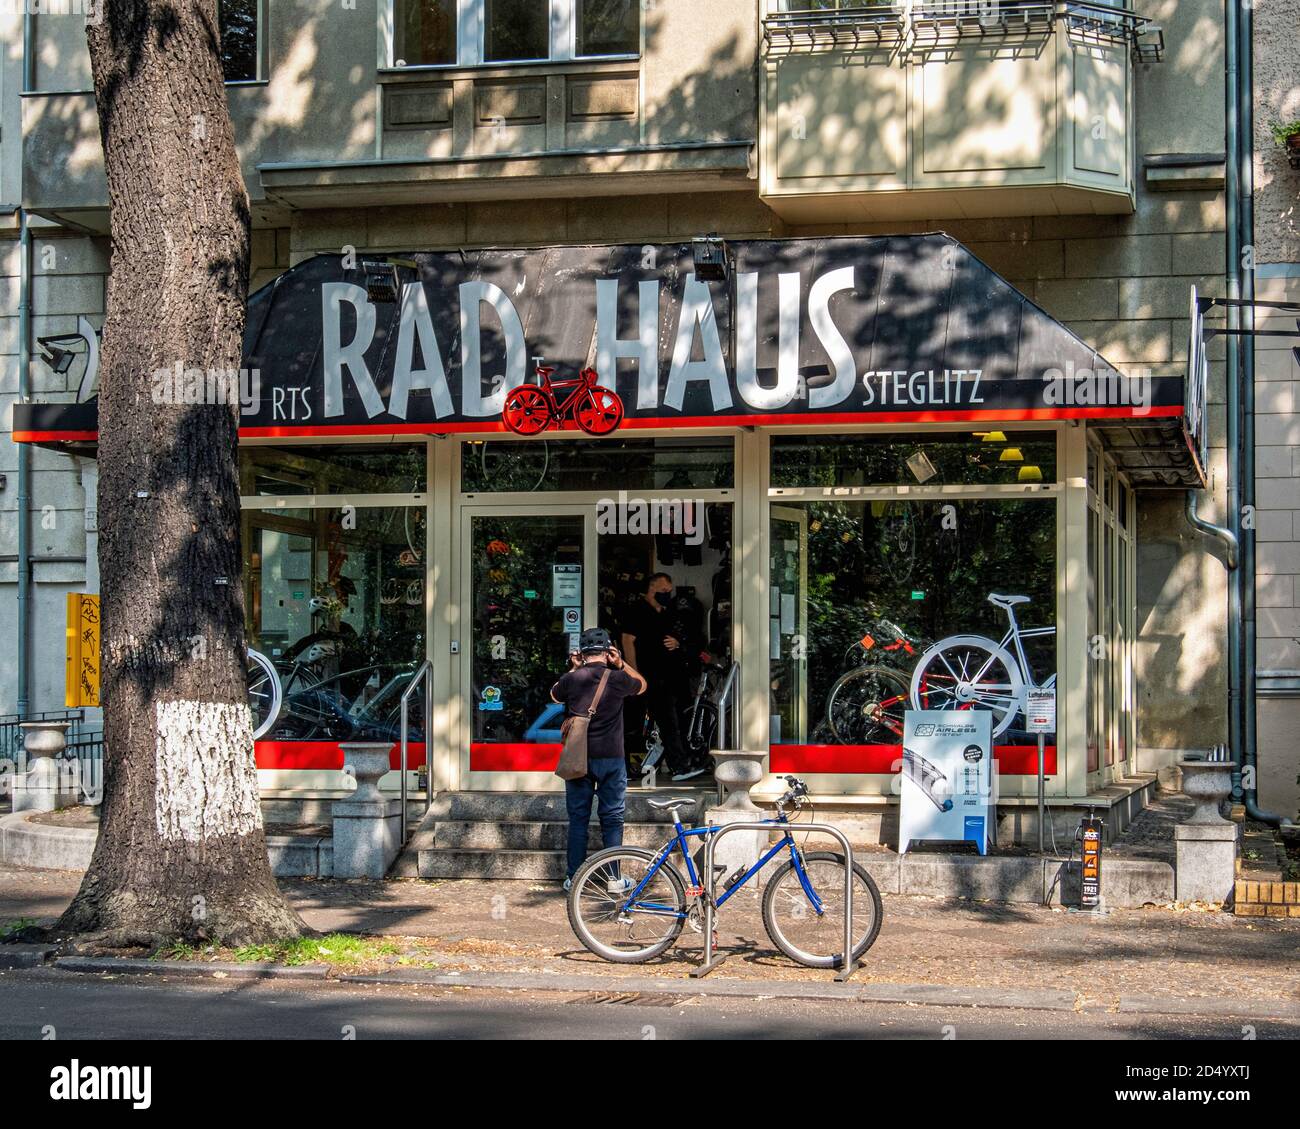 RTS Rad HAUS Steglitz-Grunewaldstraße 6, Berlin Deutschland. Außenansicht des Shops, der Fahrräder verkauft Stockfoto